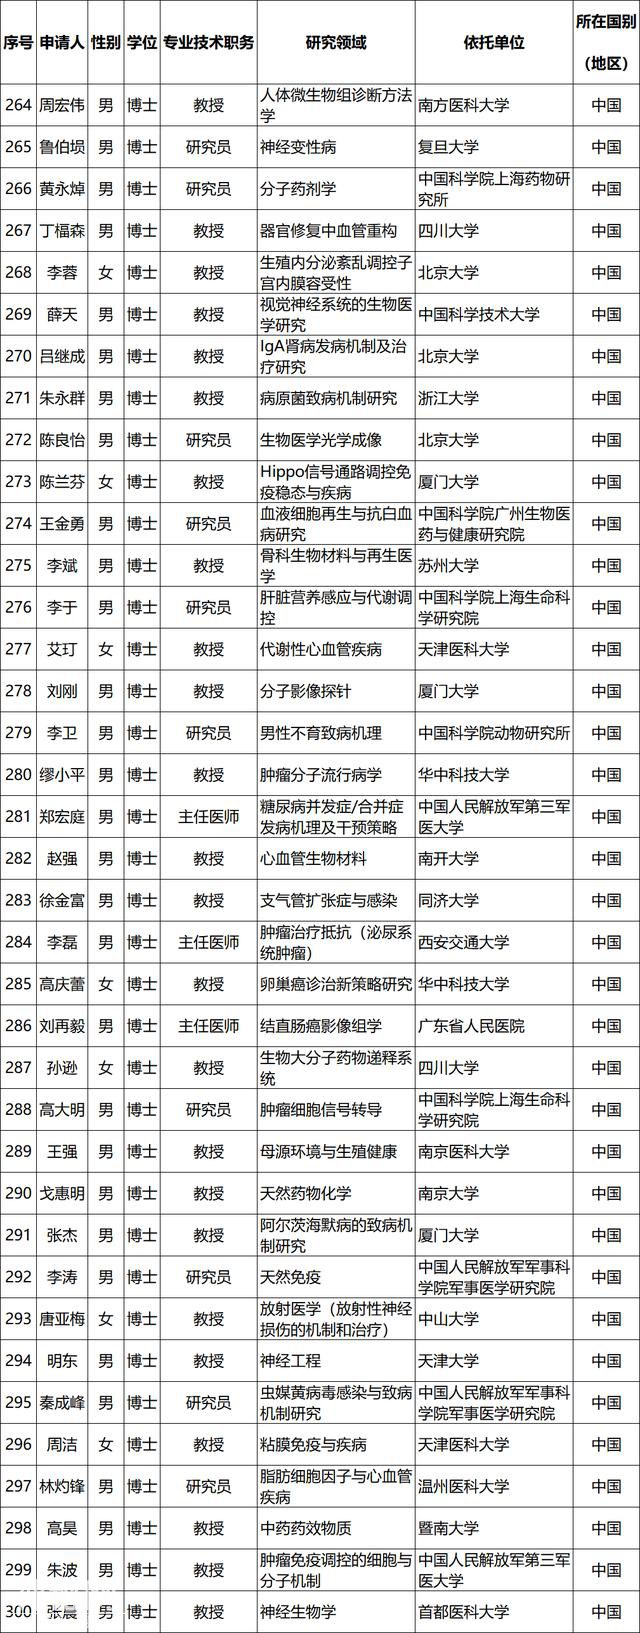 2019年国家杰青获得者名单公布 生物医药领域38人入选-1.jpg